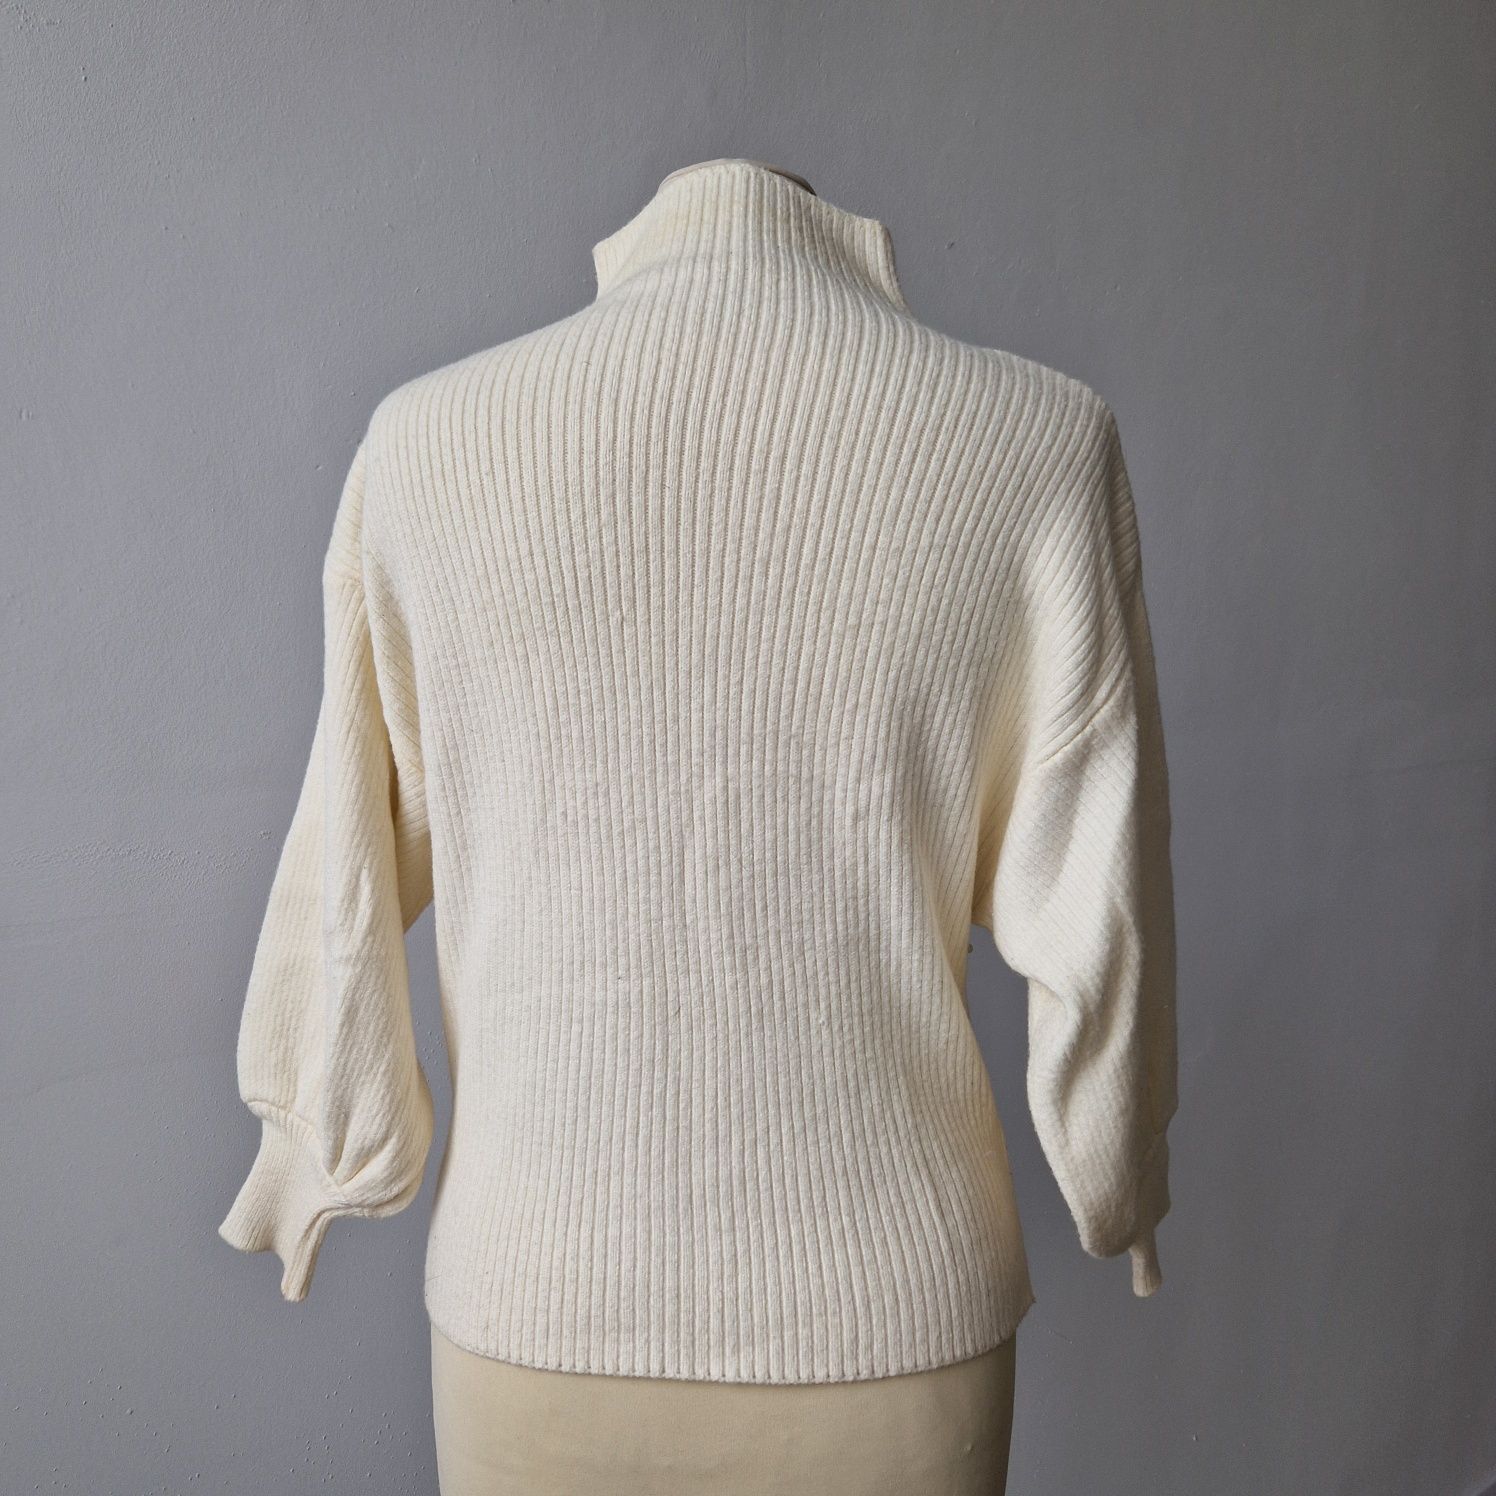 Kremowy sweterek z perełkami rozmiar M/L